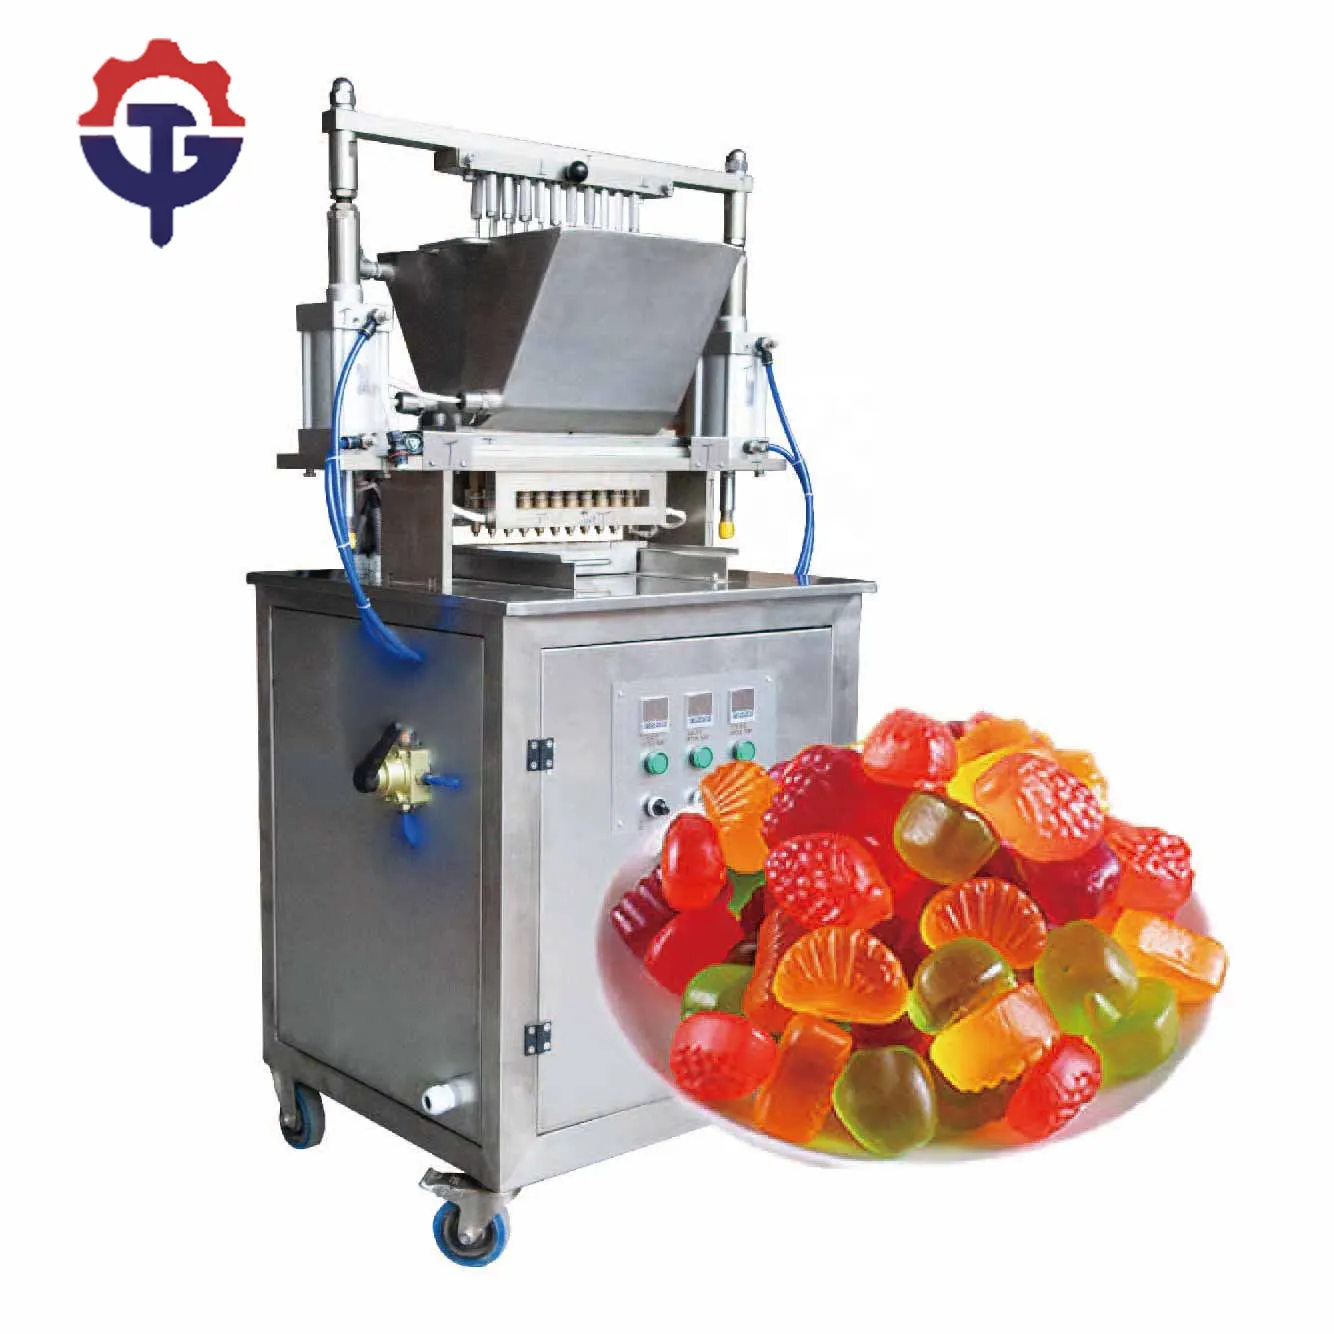 Tg Goedkope Prijs Semi-Automatische Lab Gebruik Kleine Jelly Candy Maker Maken Deponeren Productie Machine